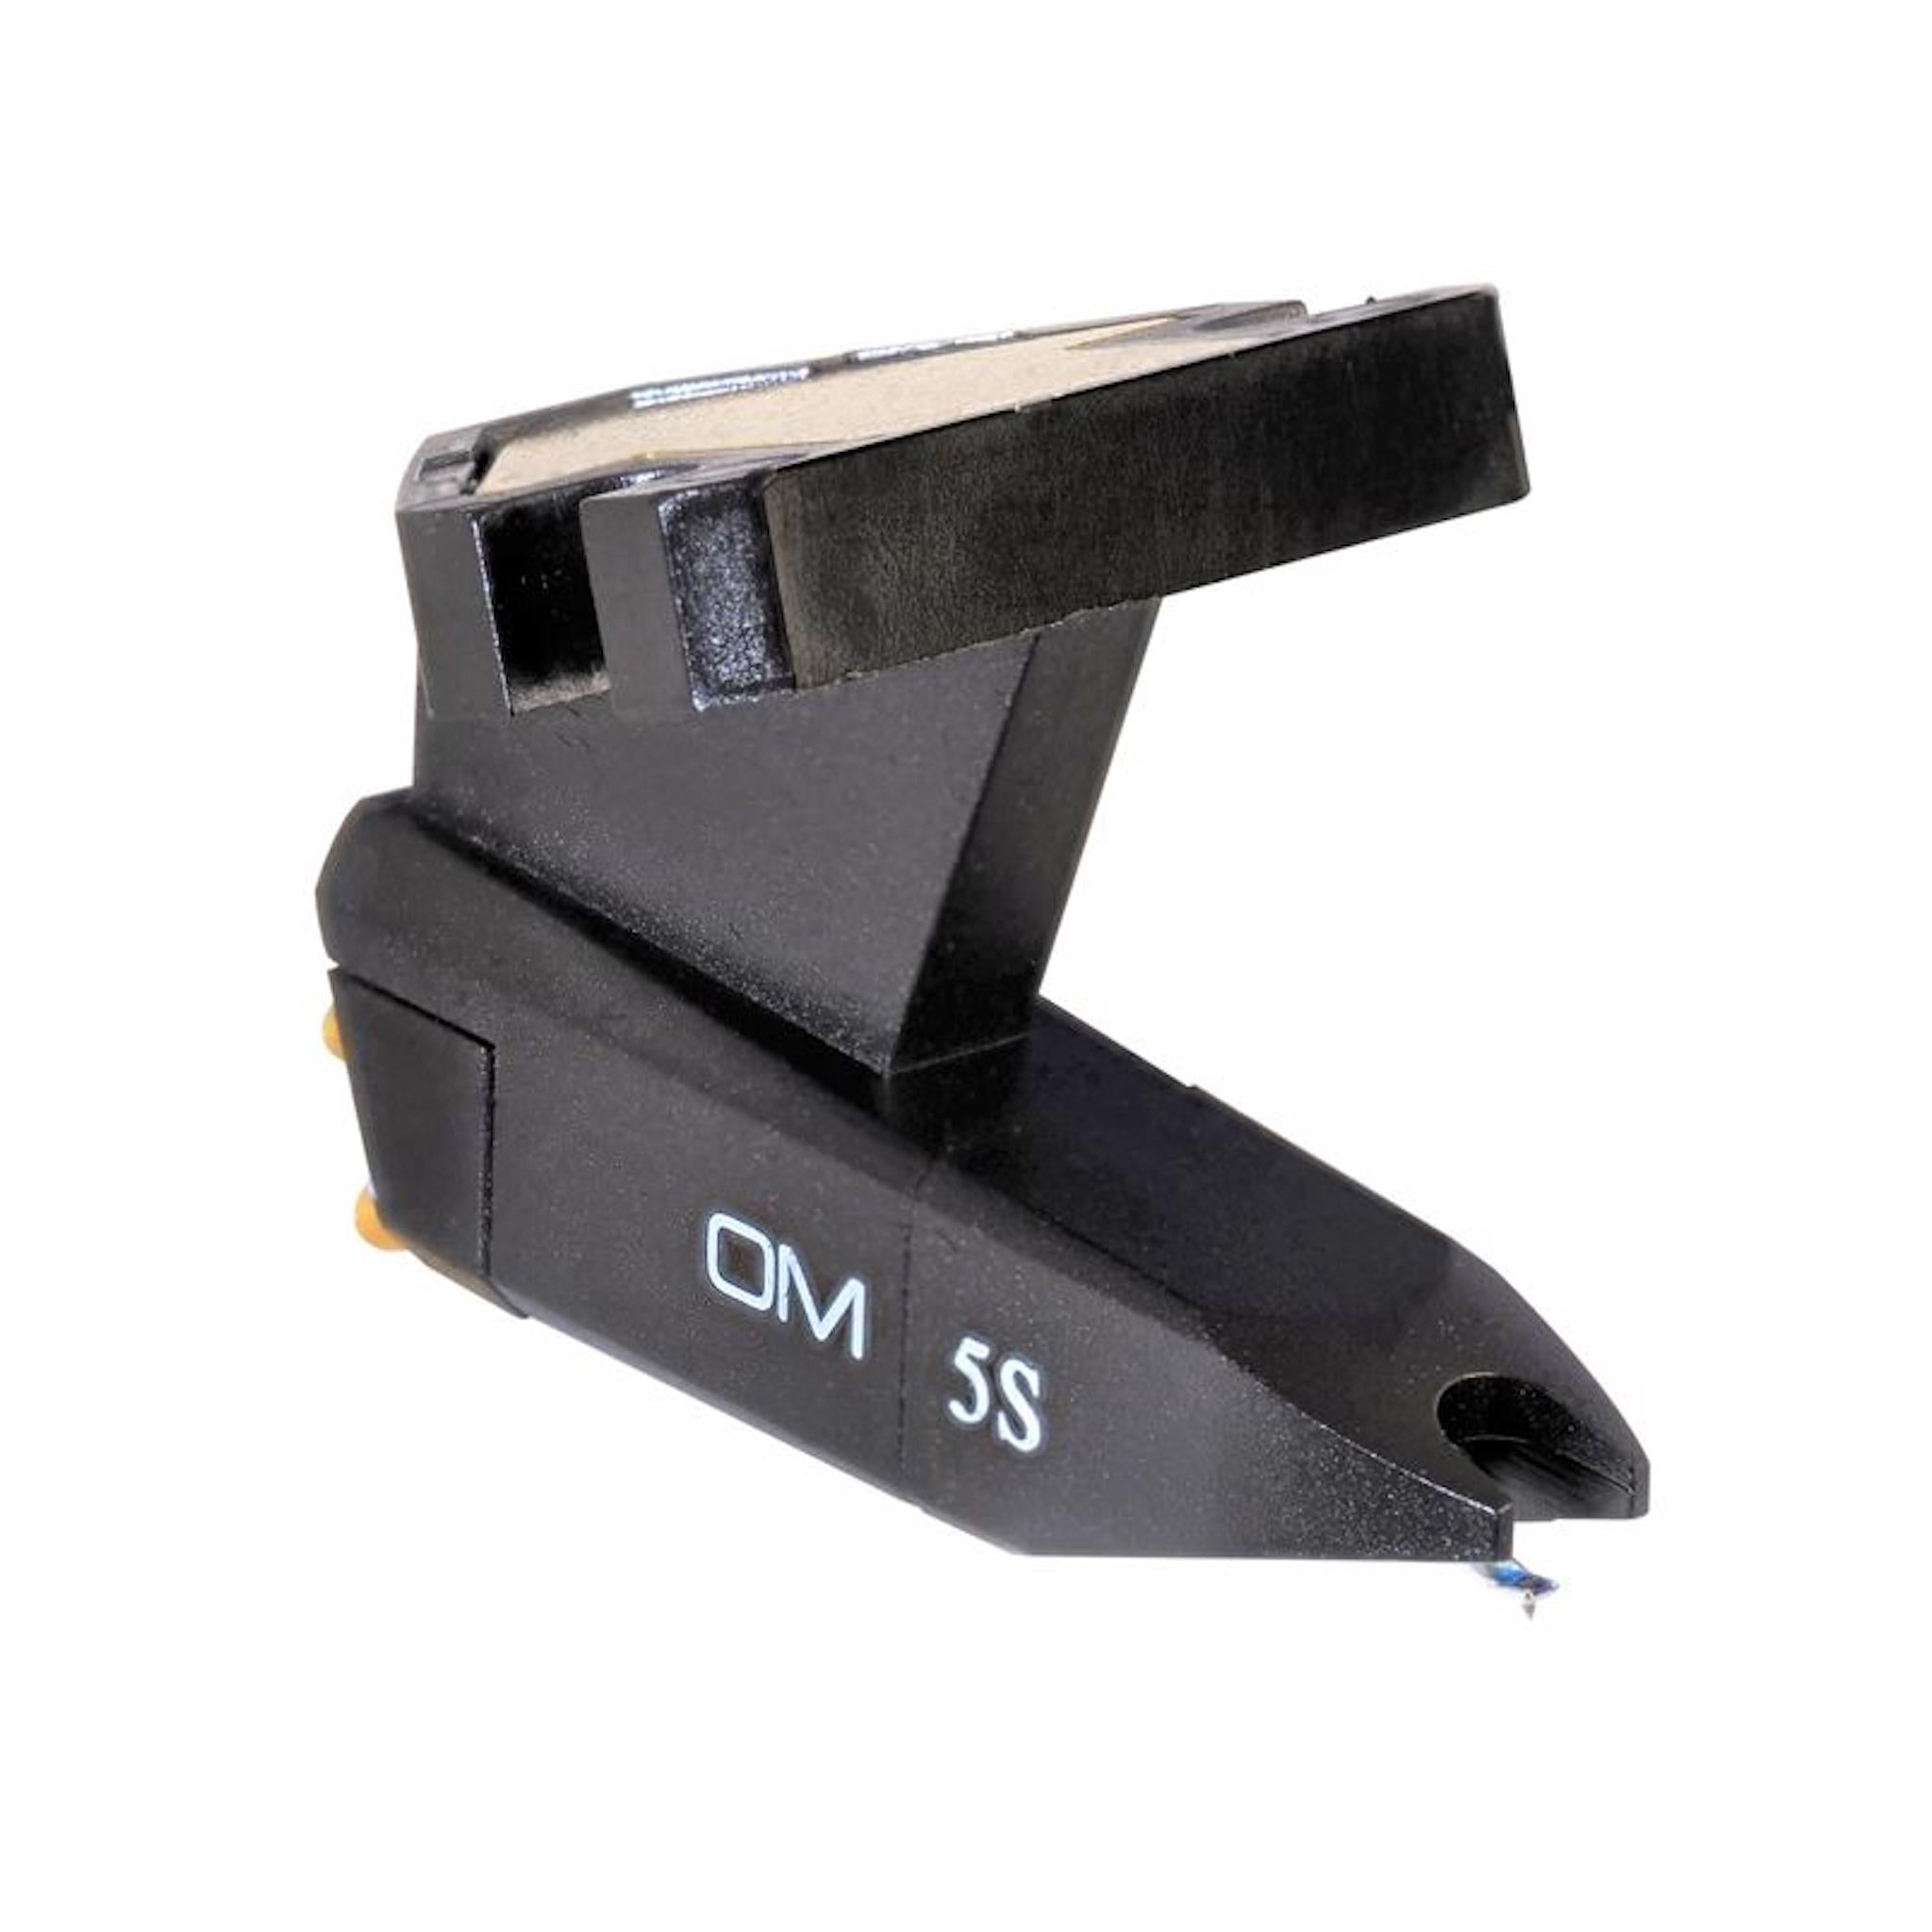 Ortofon OM 5S - Moving Magnet Cartridge - AVStore